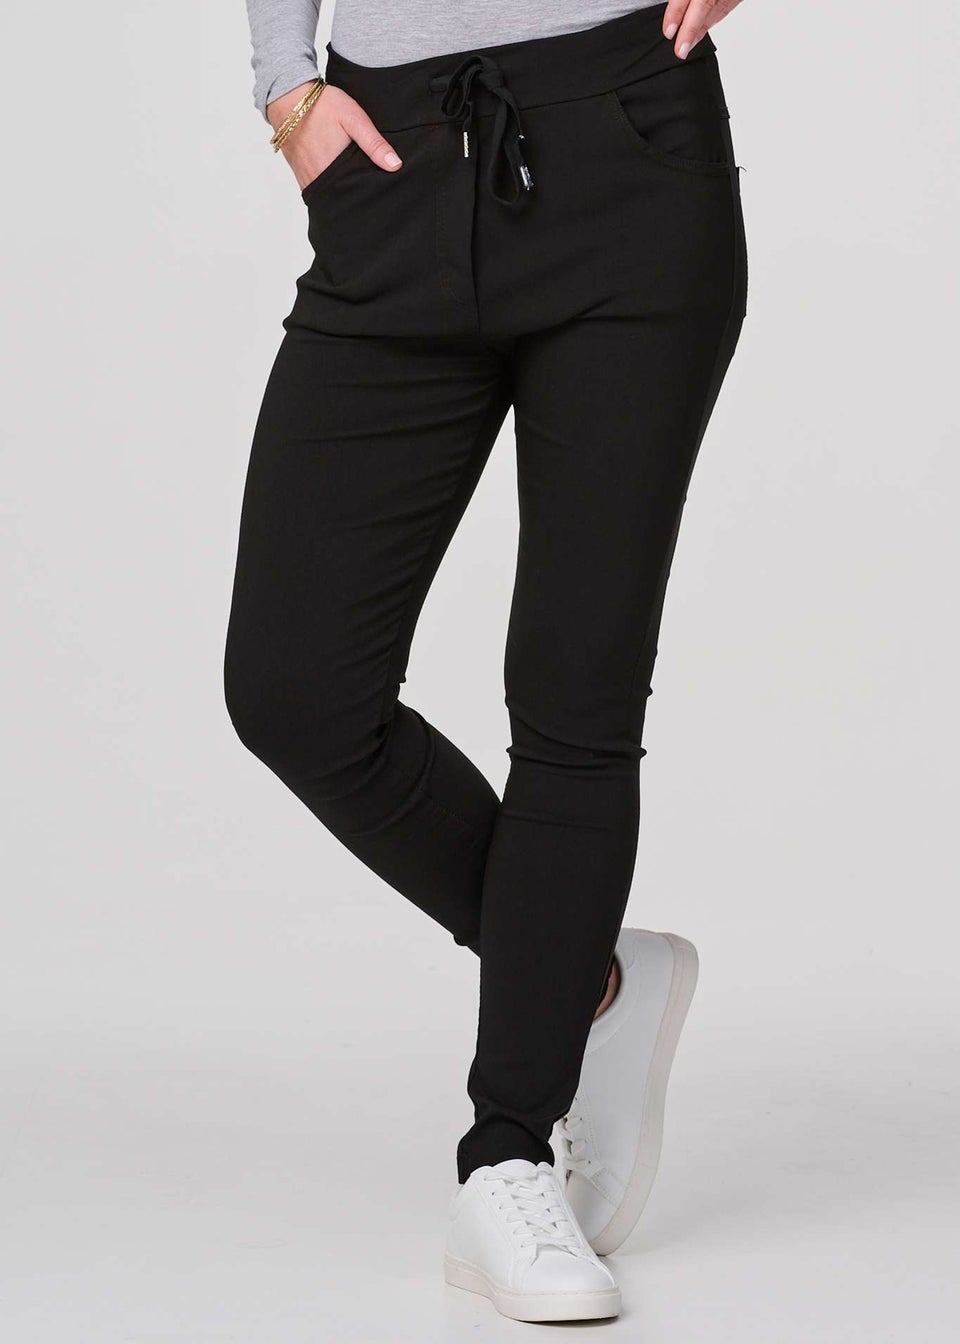 Izabel London Black Plain Skinny Drawstring Trousers